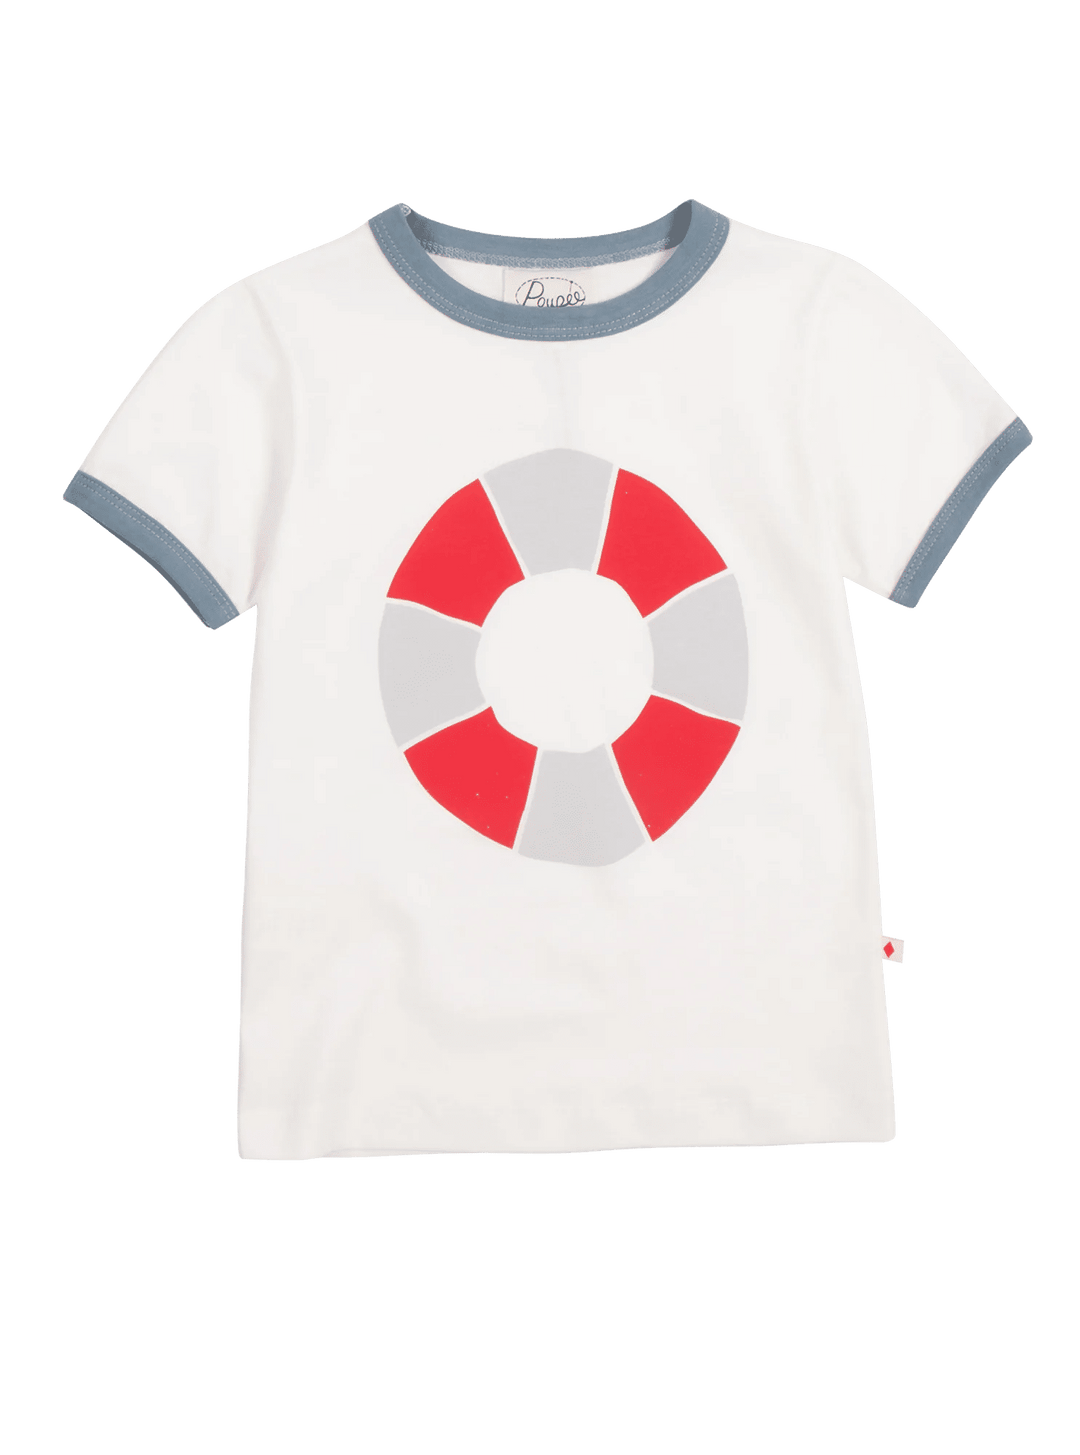 Lifesaver T-shirt